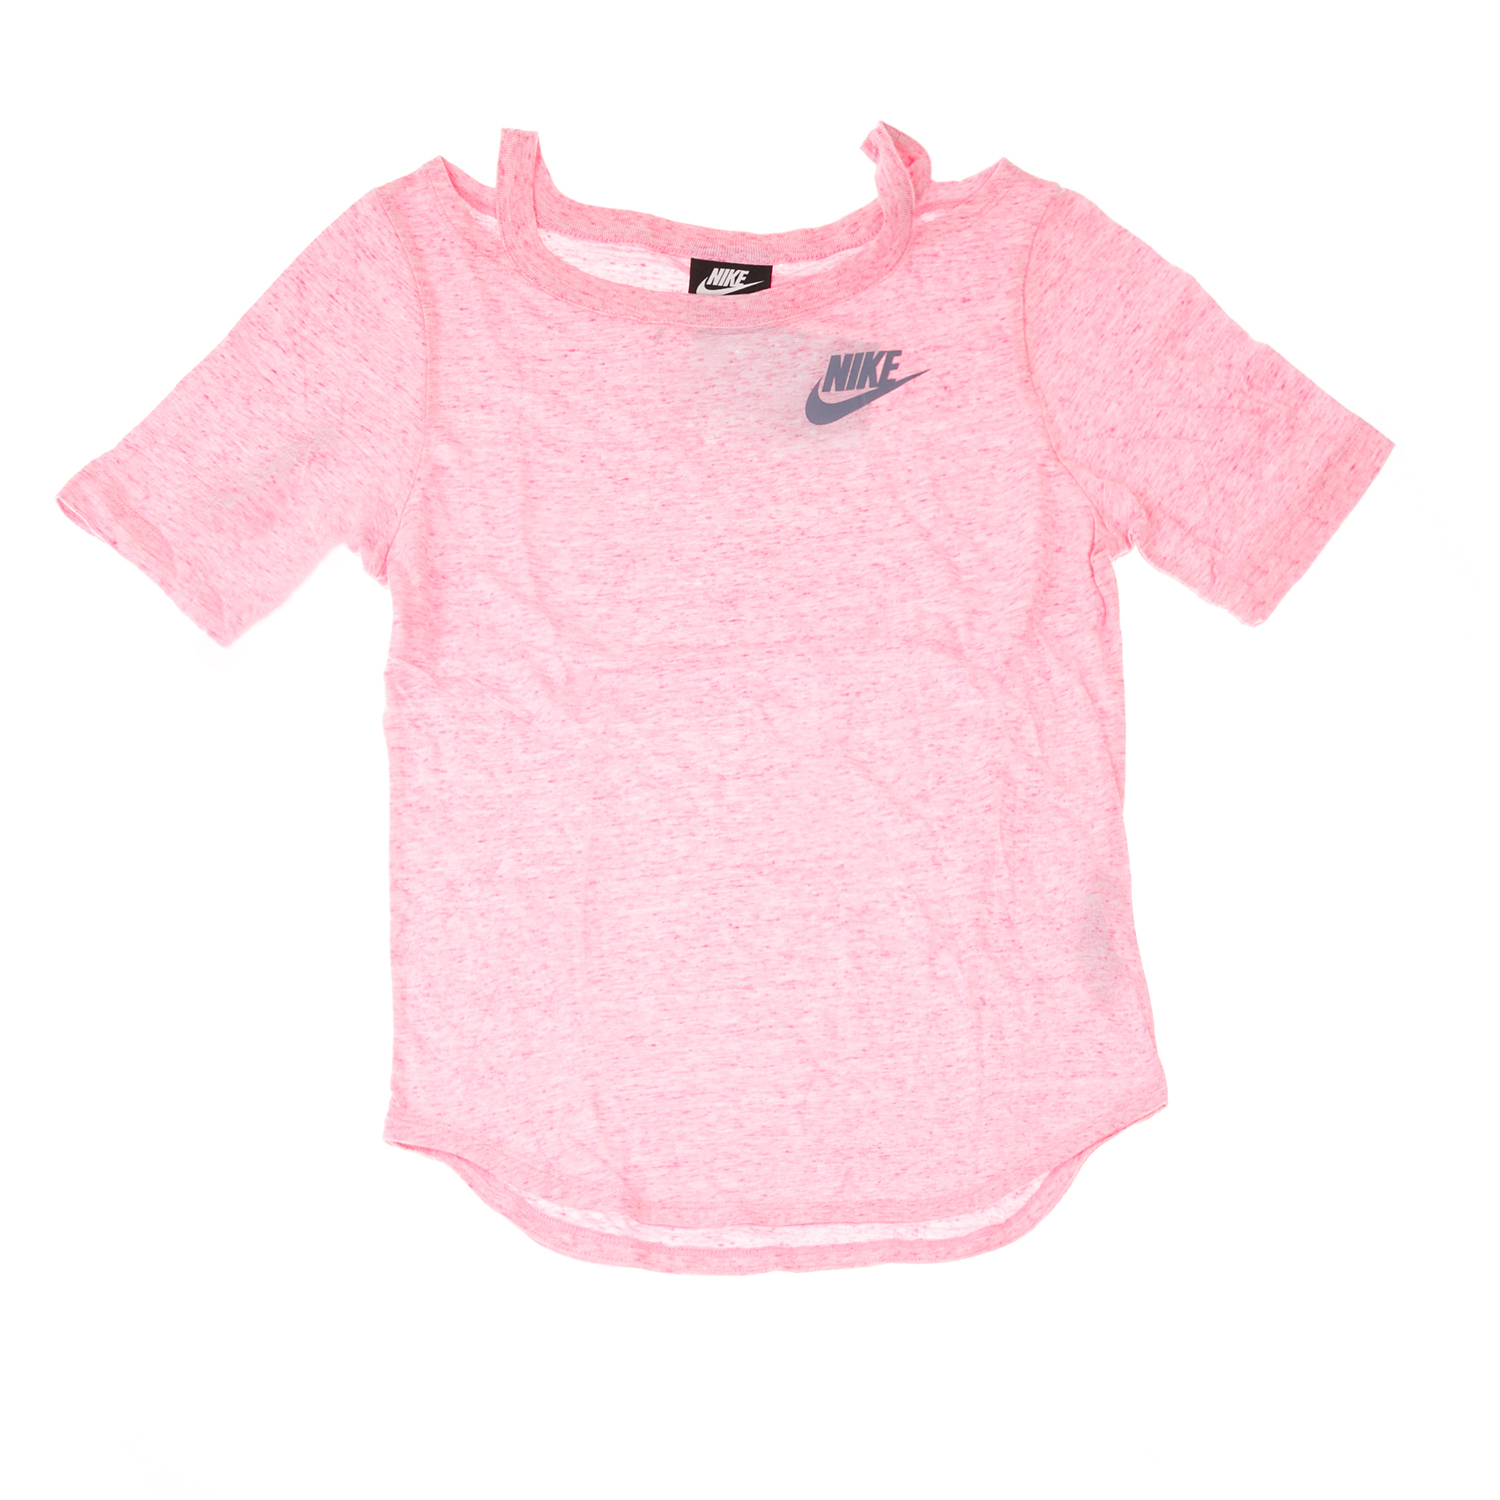 Παιδικά/Girls/Ρούχα/Αθλητικά NIKE - Παιδική μπλούζα NIKE TOP SS ροζ